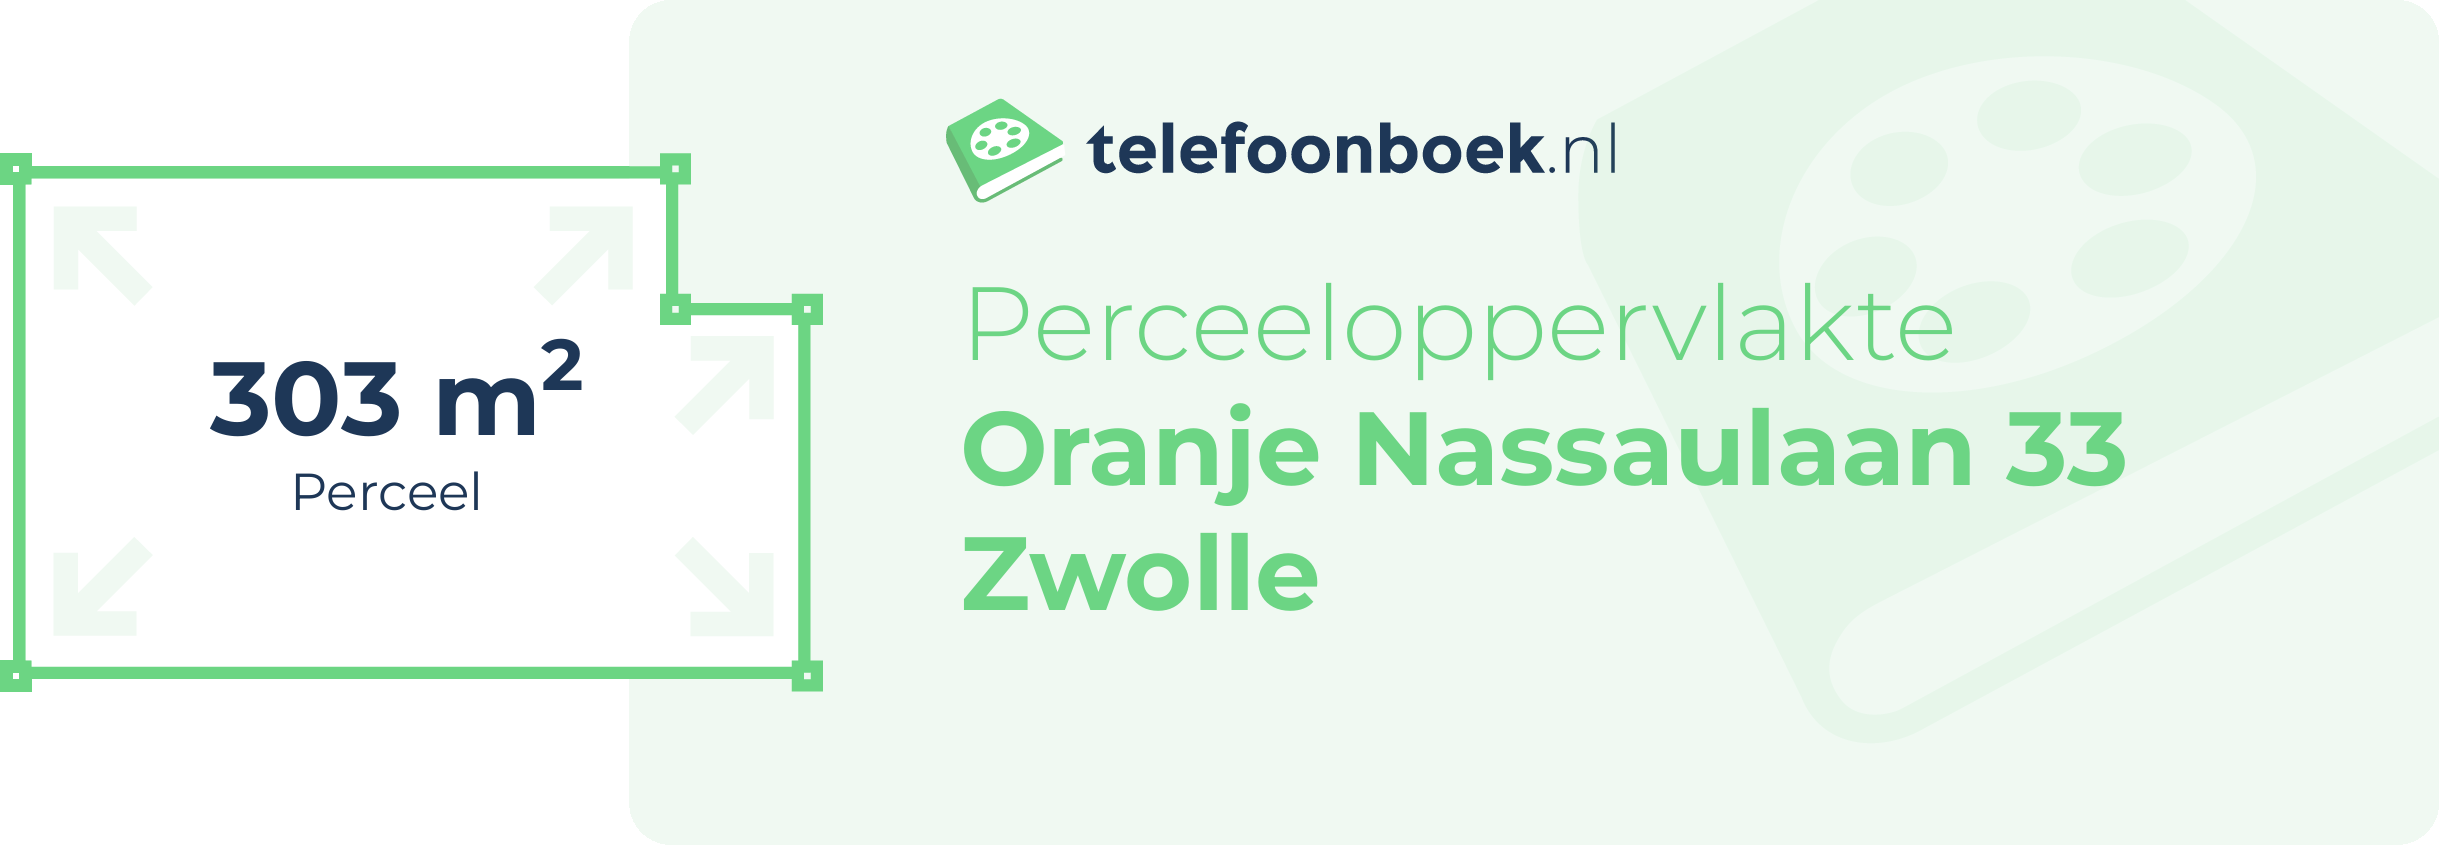 Perceeloppervlakte Oranje Nassaulaan 33 Zwolle